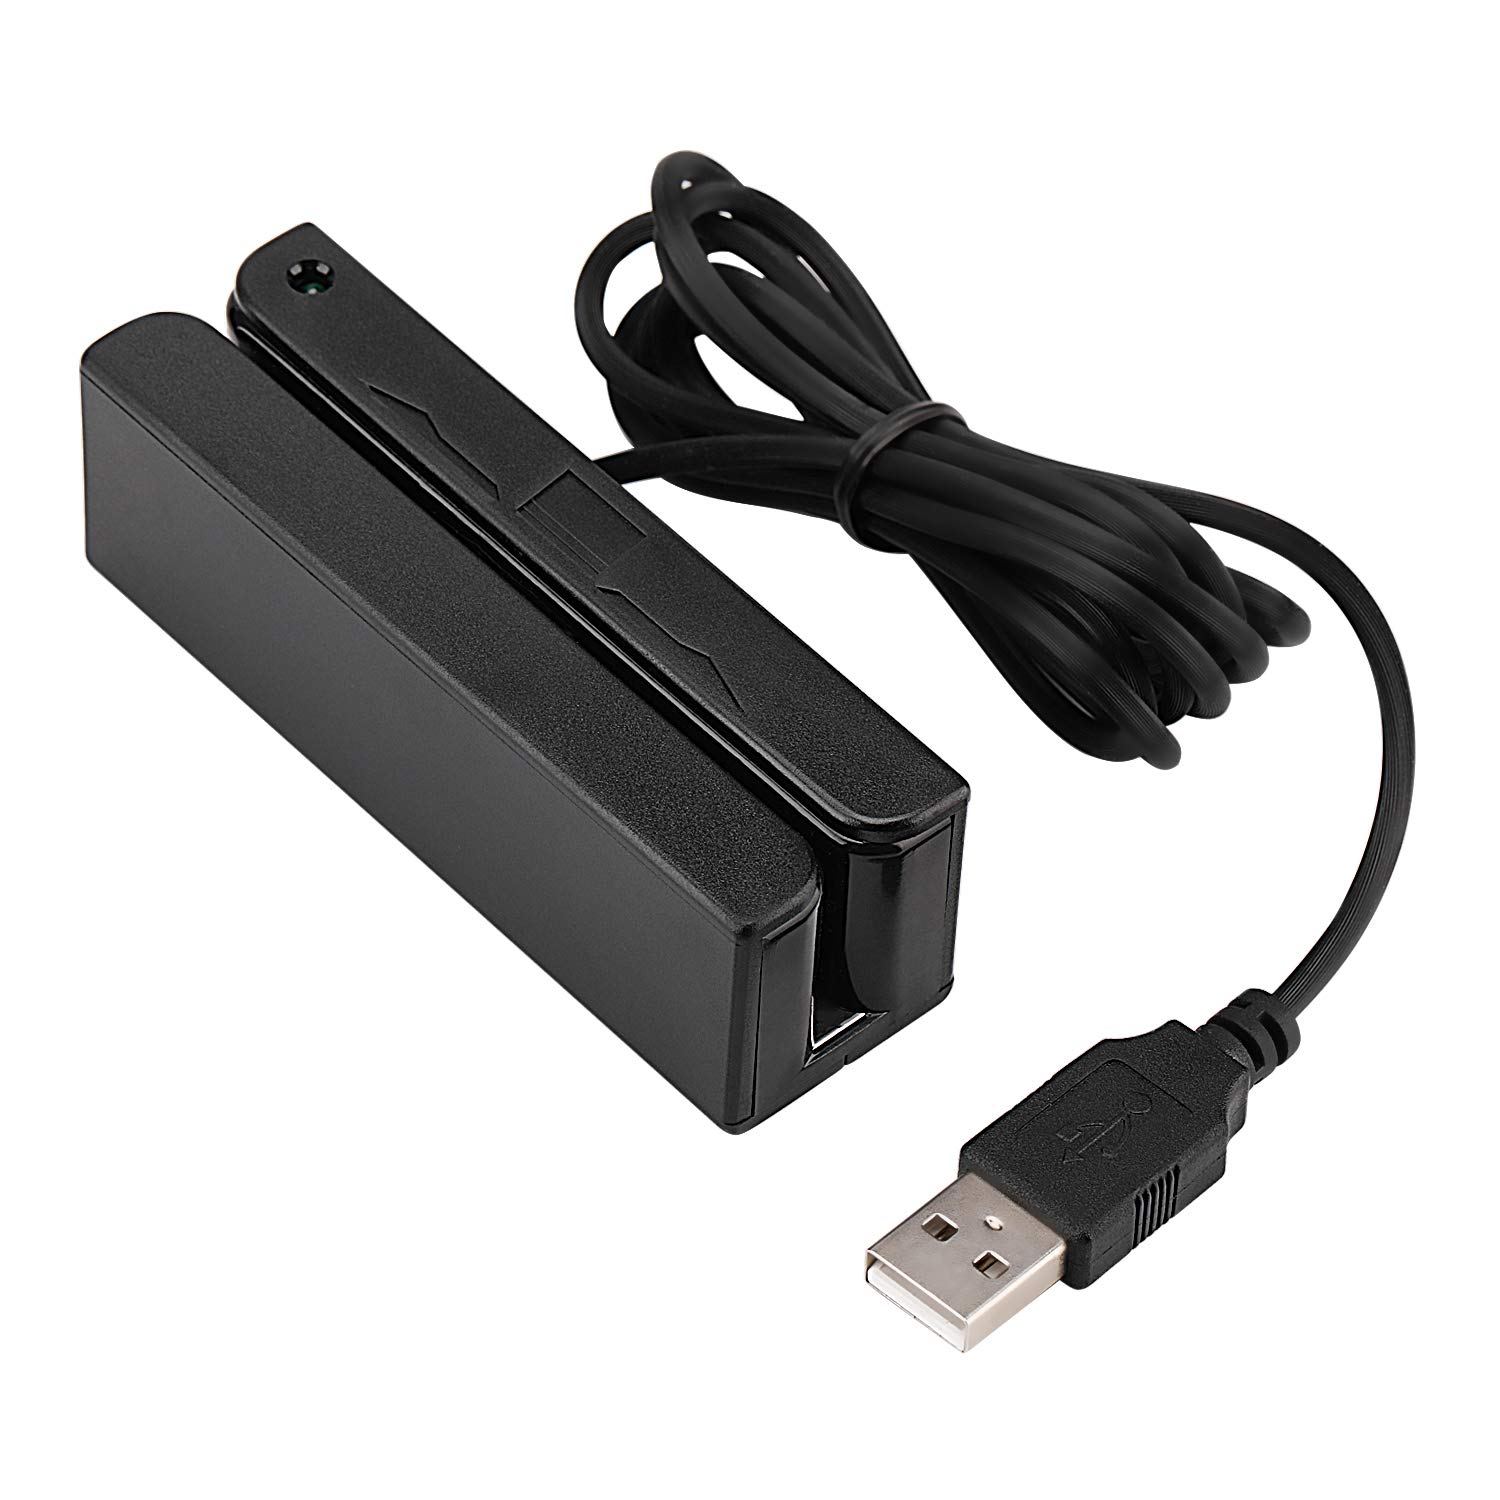 USB Credit Card Reader - USBSwiper